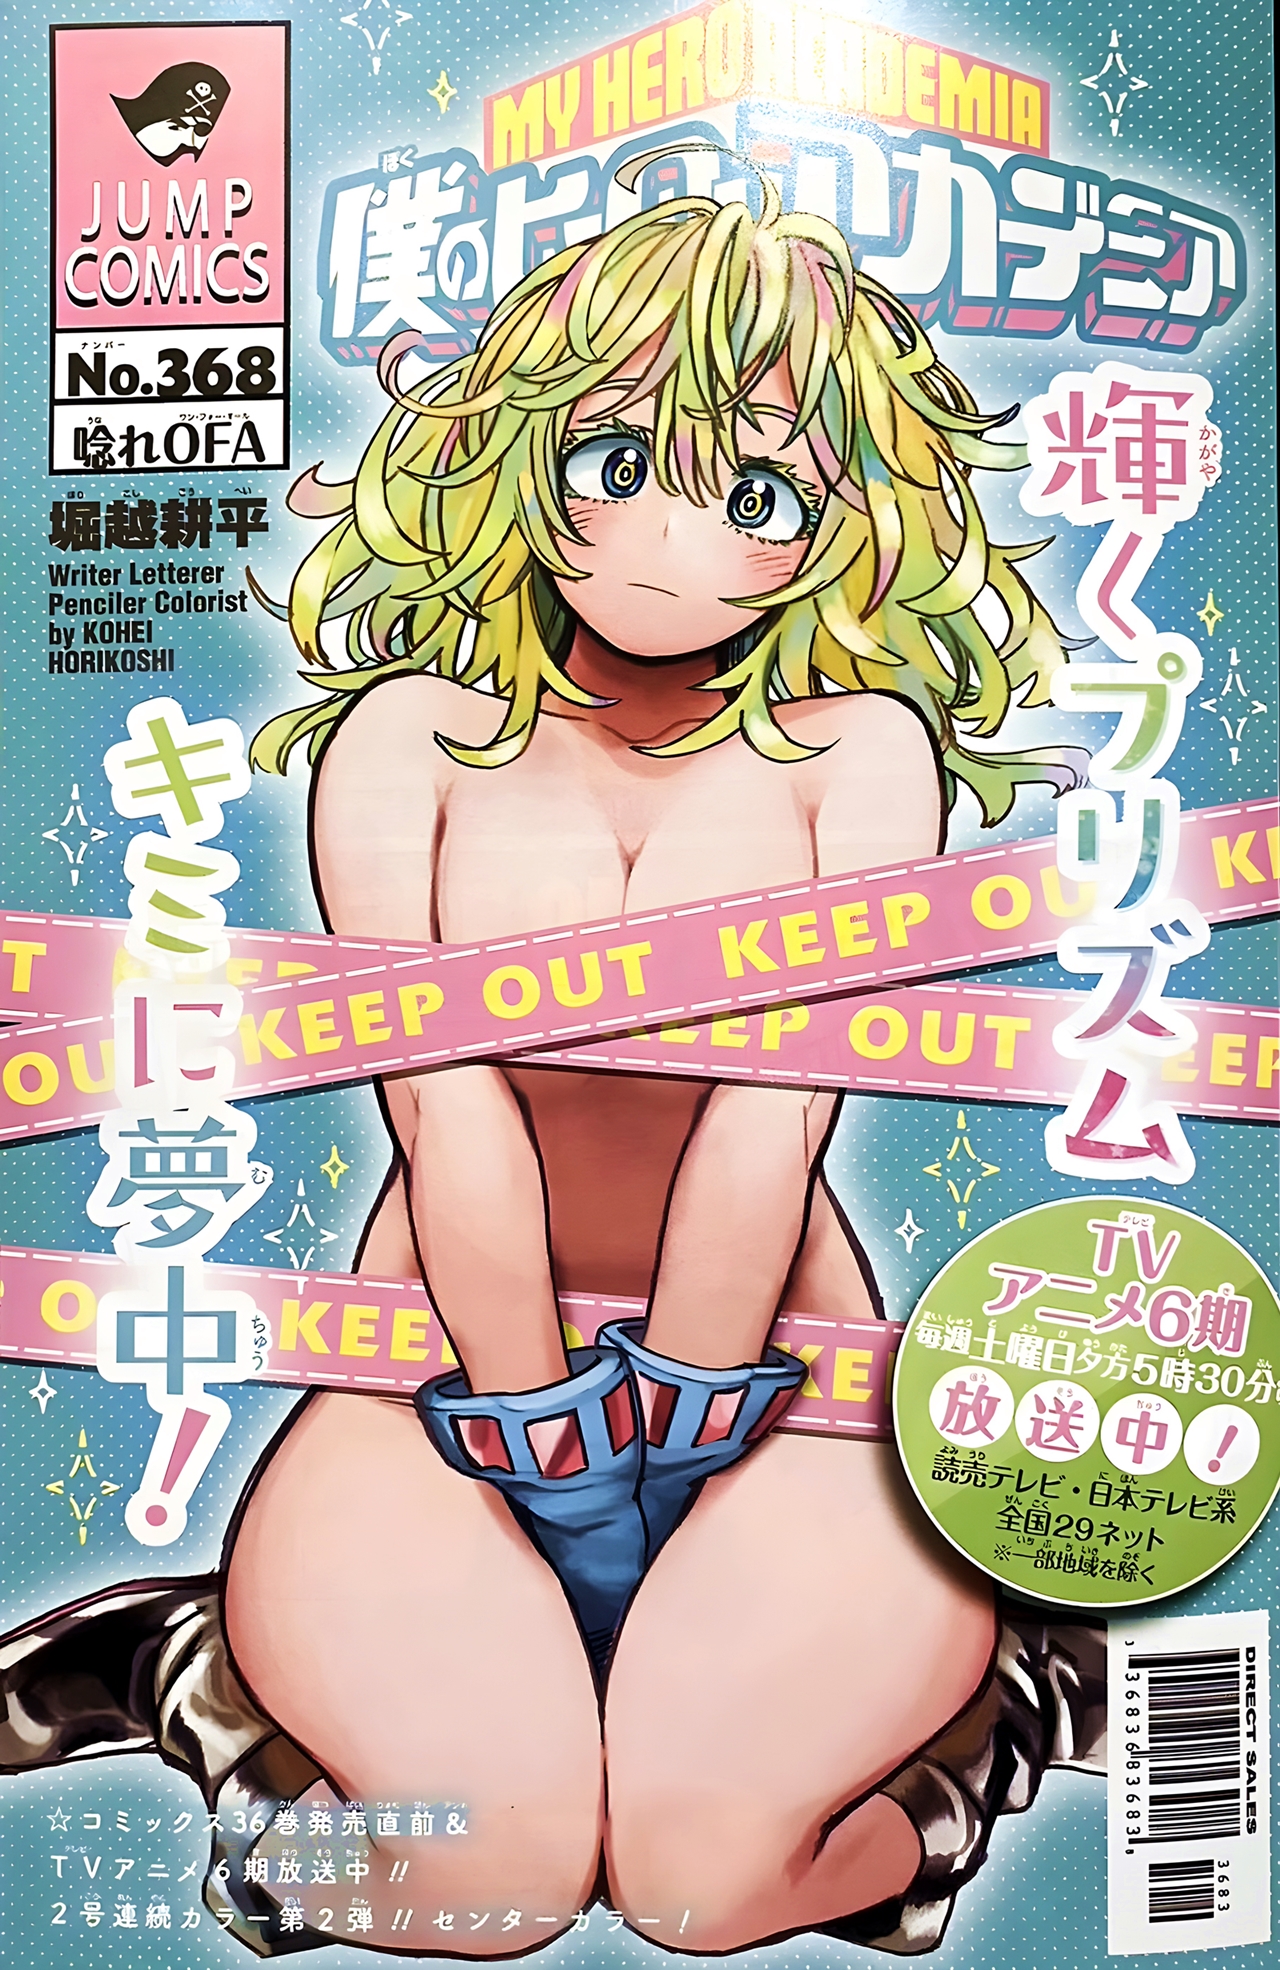 Portada de la revista Weekly Shonen Jump, donde aparece Invisible Girl desnuda